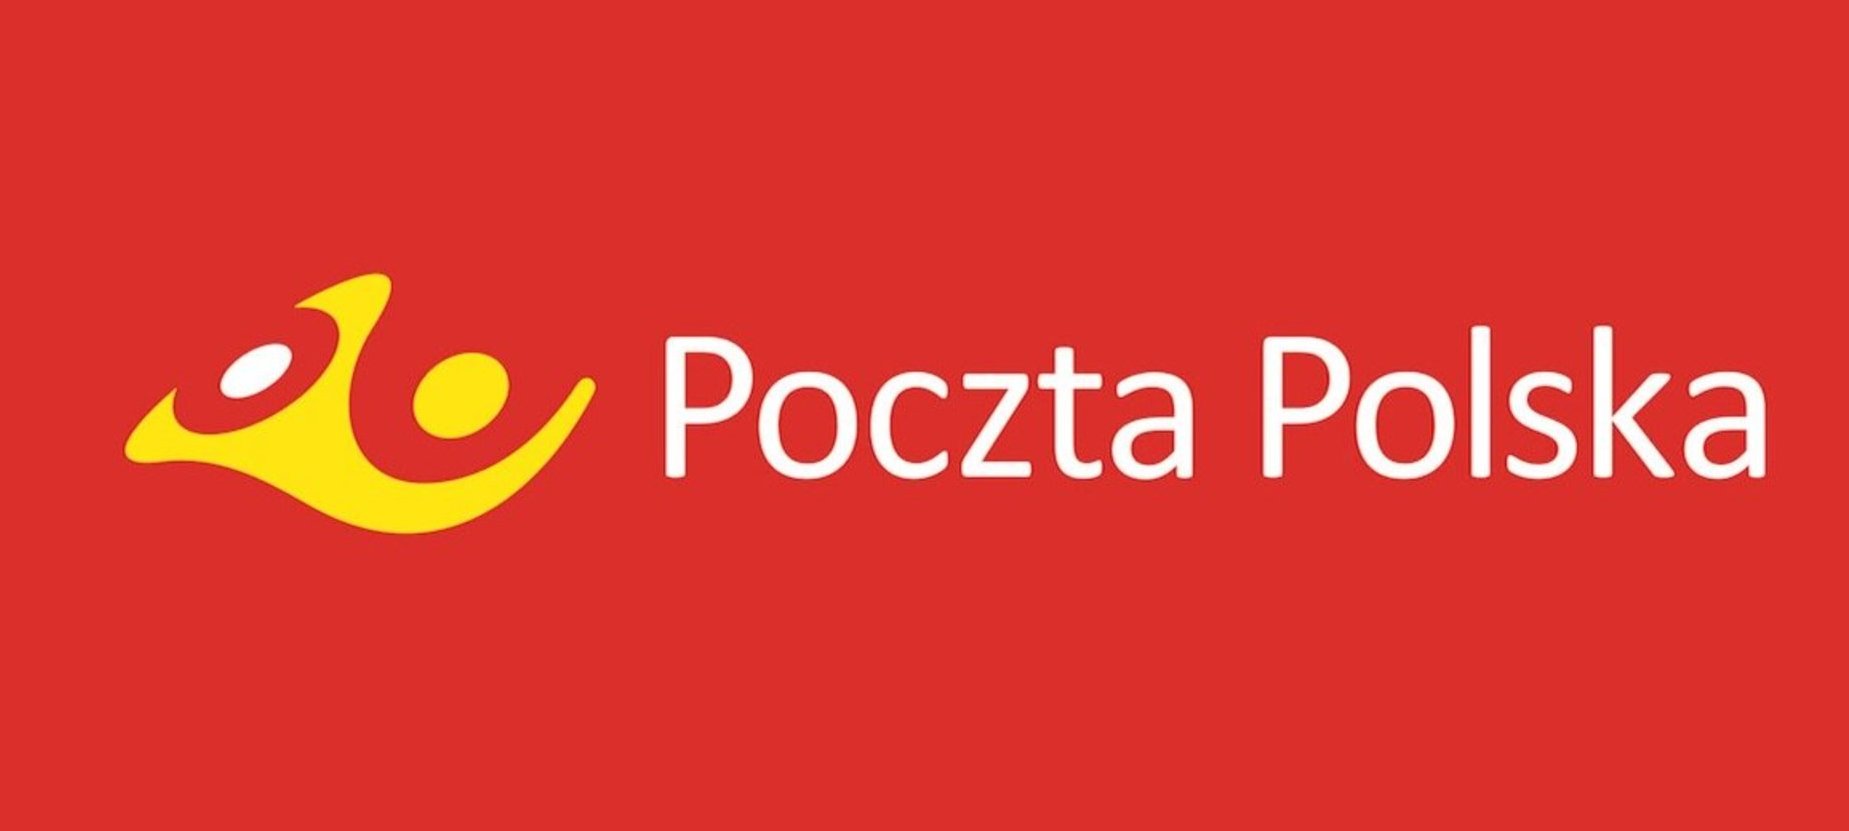 Czerwono tło z białym napisem Poczta Polska